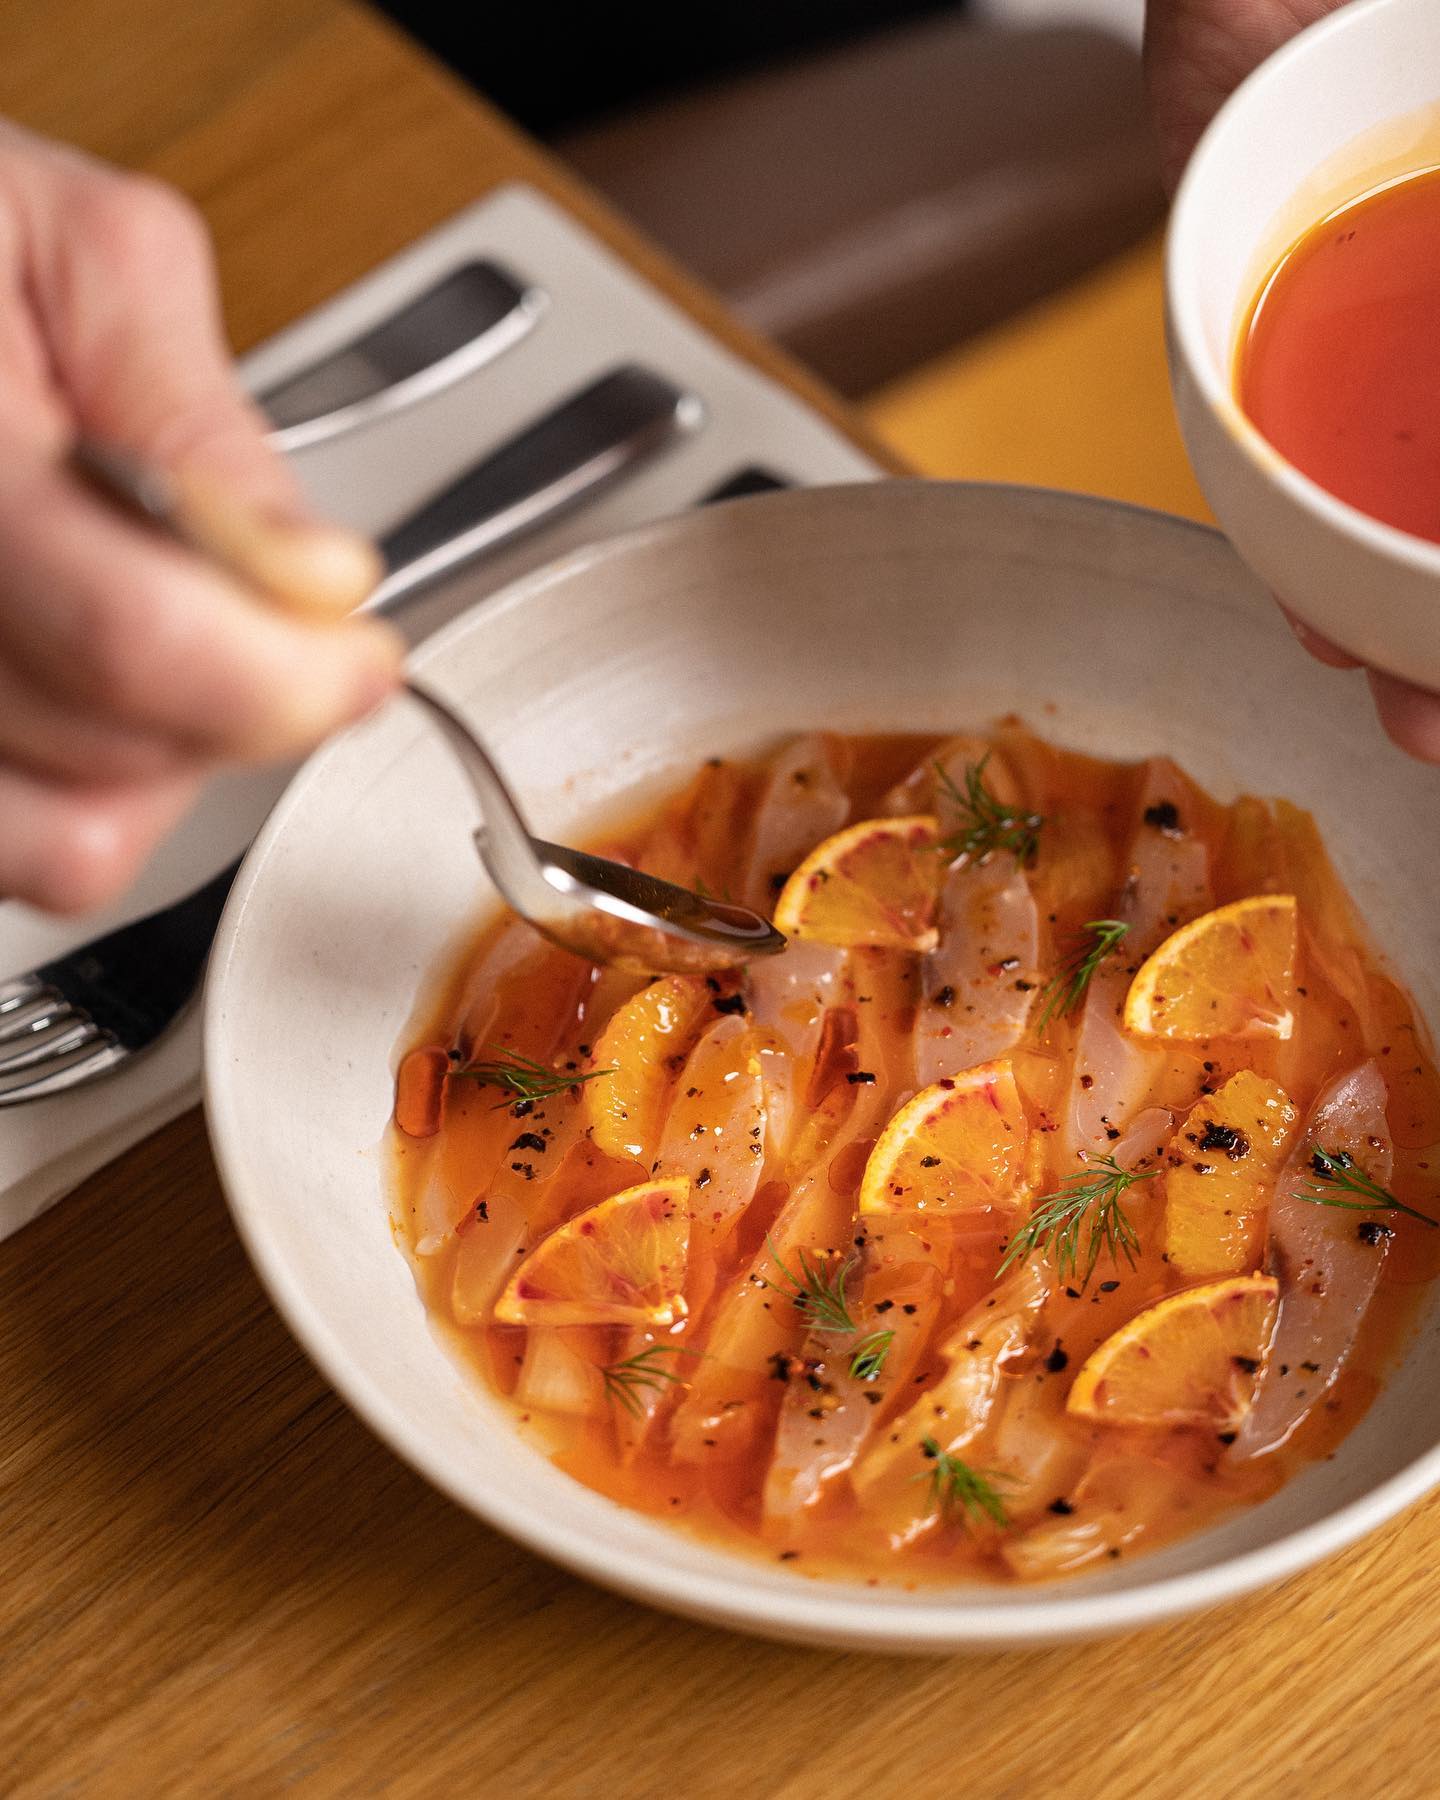 Mulet maturé, kimchi d’endives et jus de kimchi acidulé, suprêmes d’oranges sanguines par le chef eric maillet 